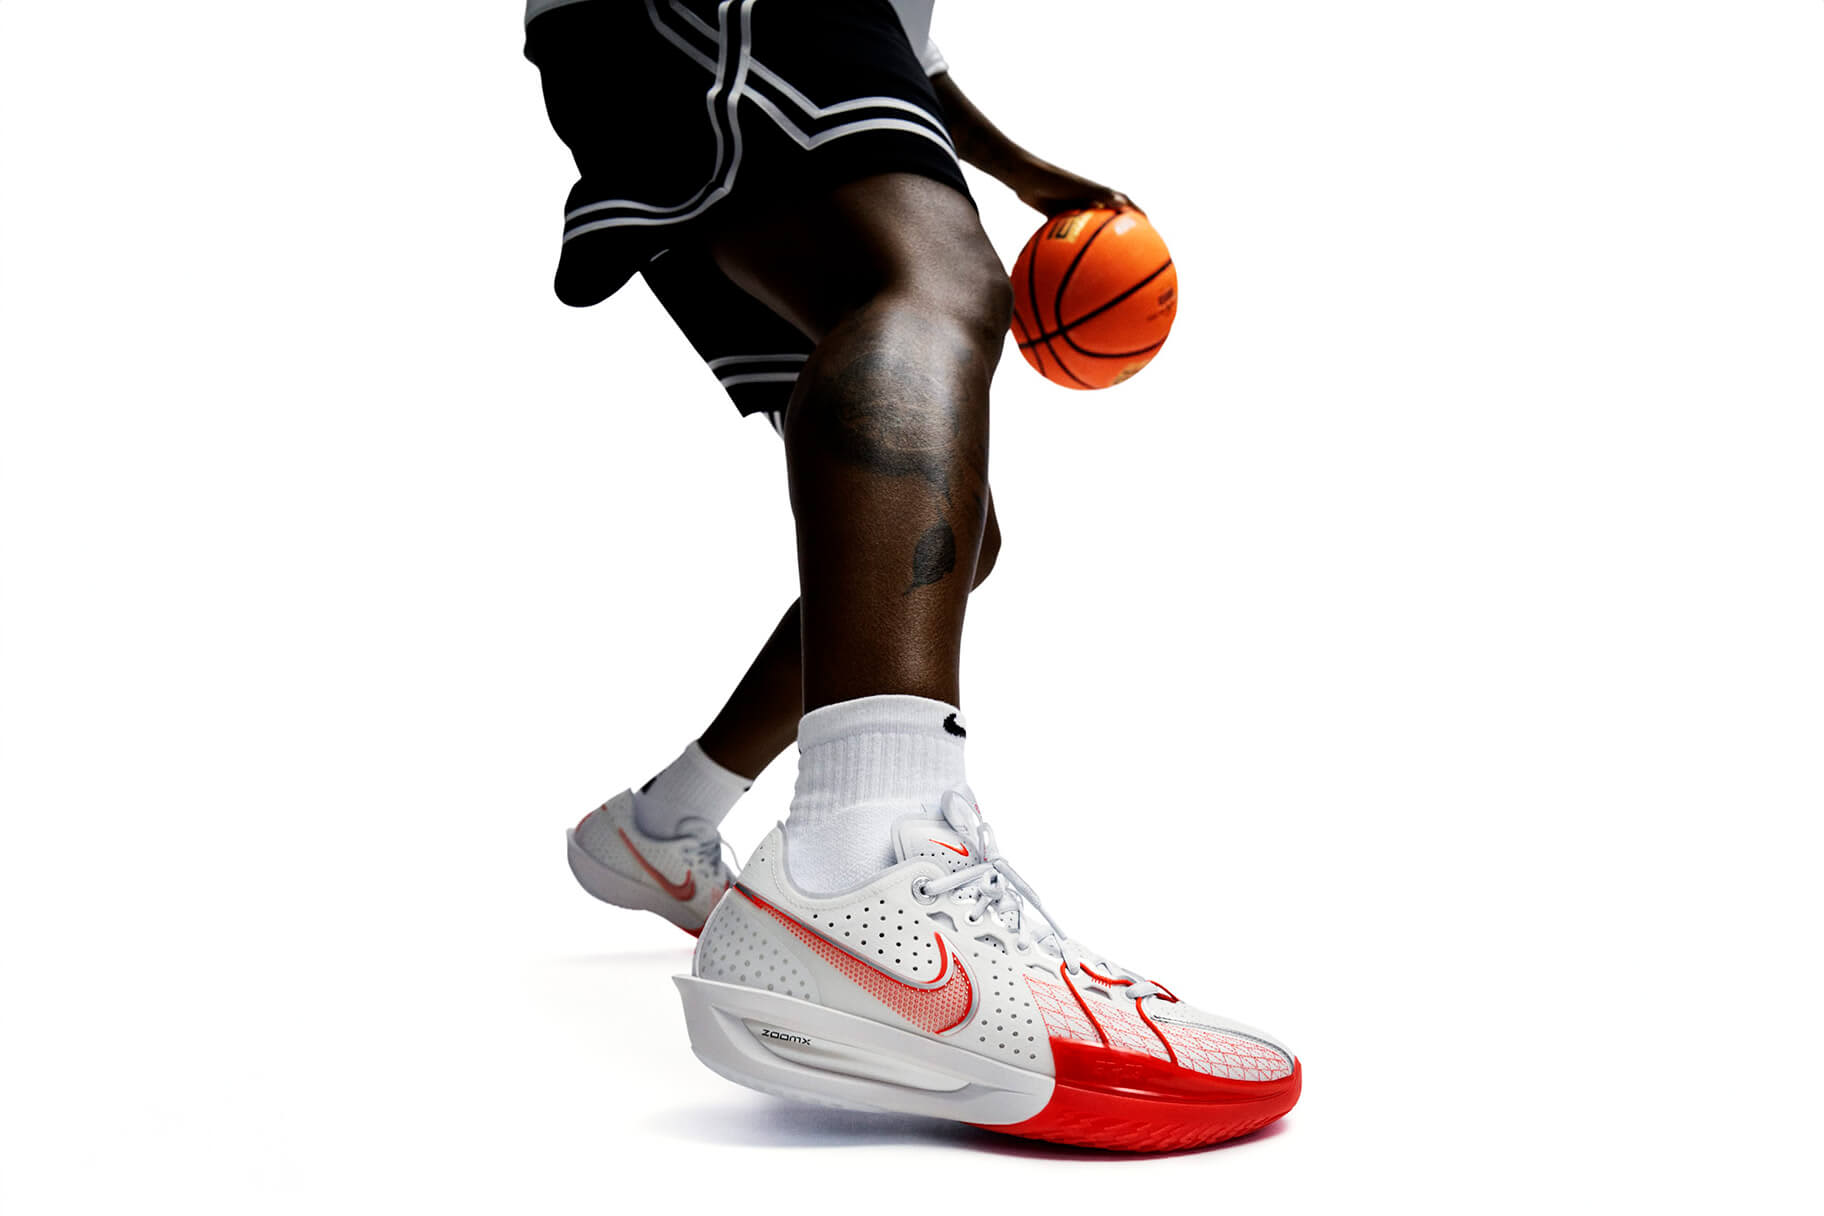 Nike introduce la innovadora tecnología de la espuma ZoomX al baloncesto con las G.T. Cut 3